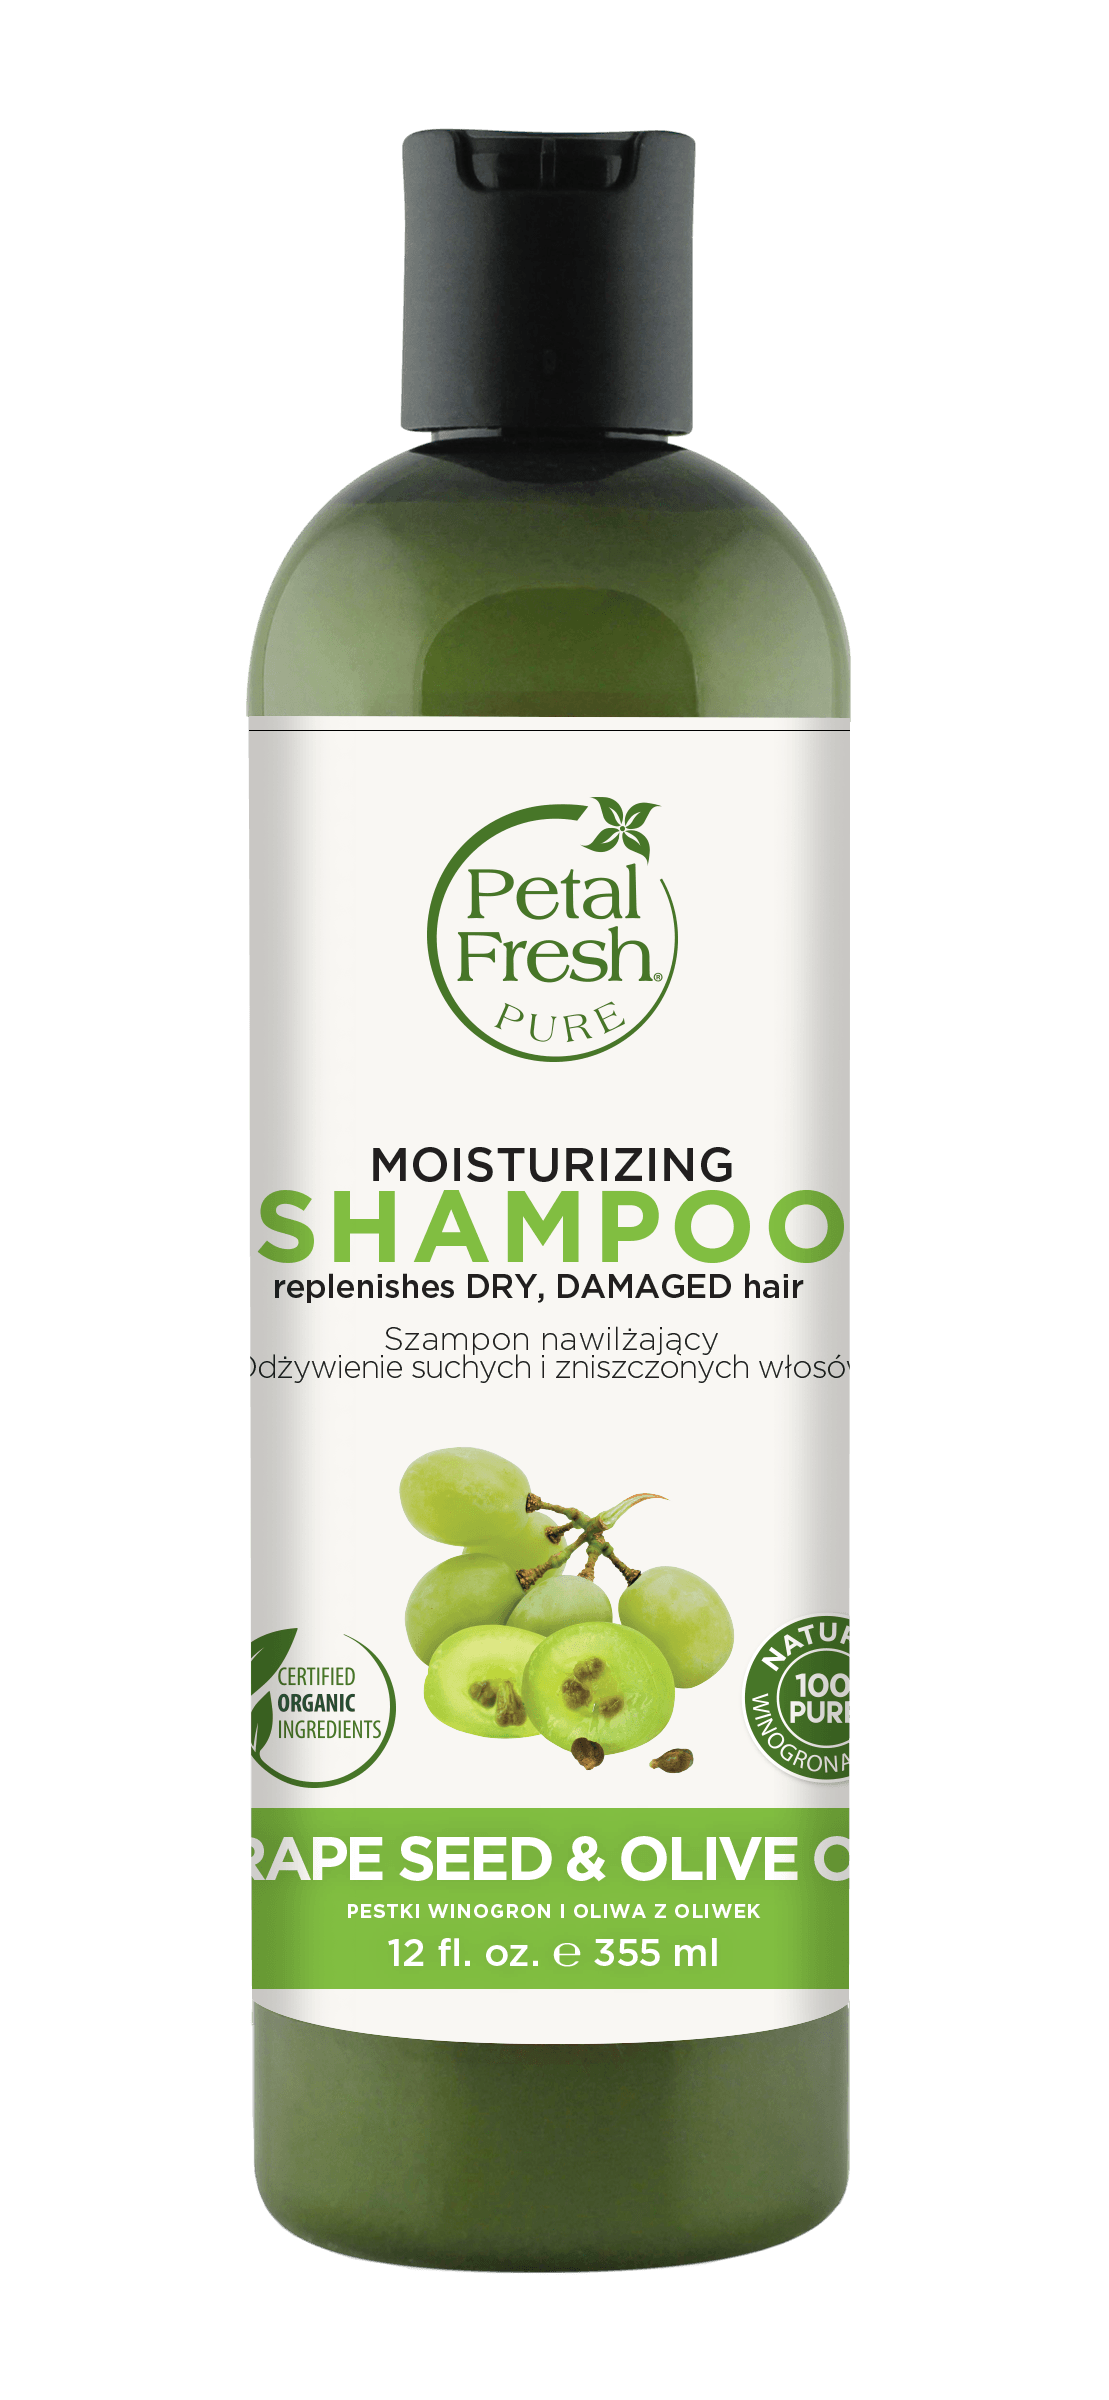 petal fresh szampon nawilżający pestki winogron